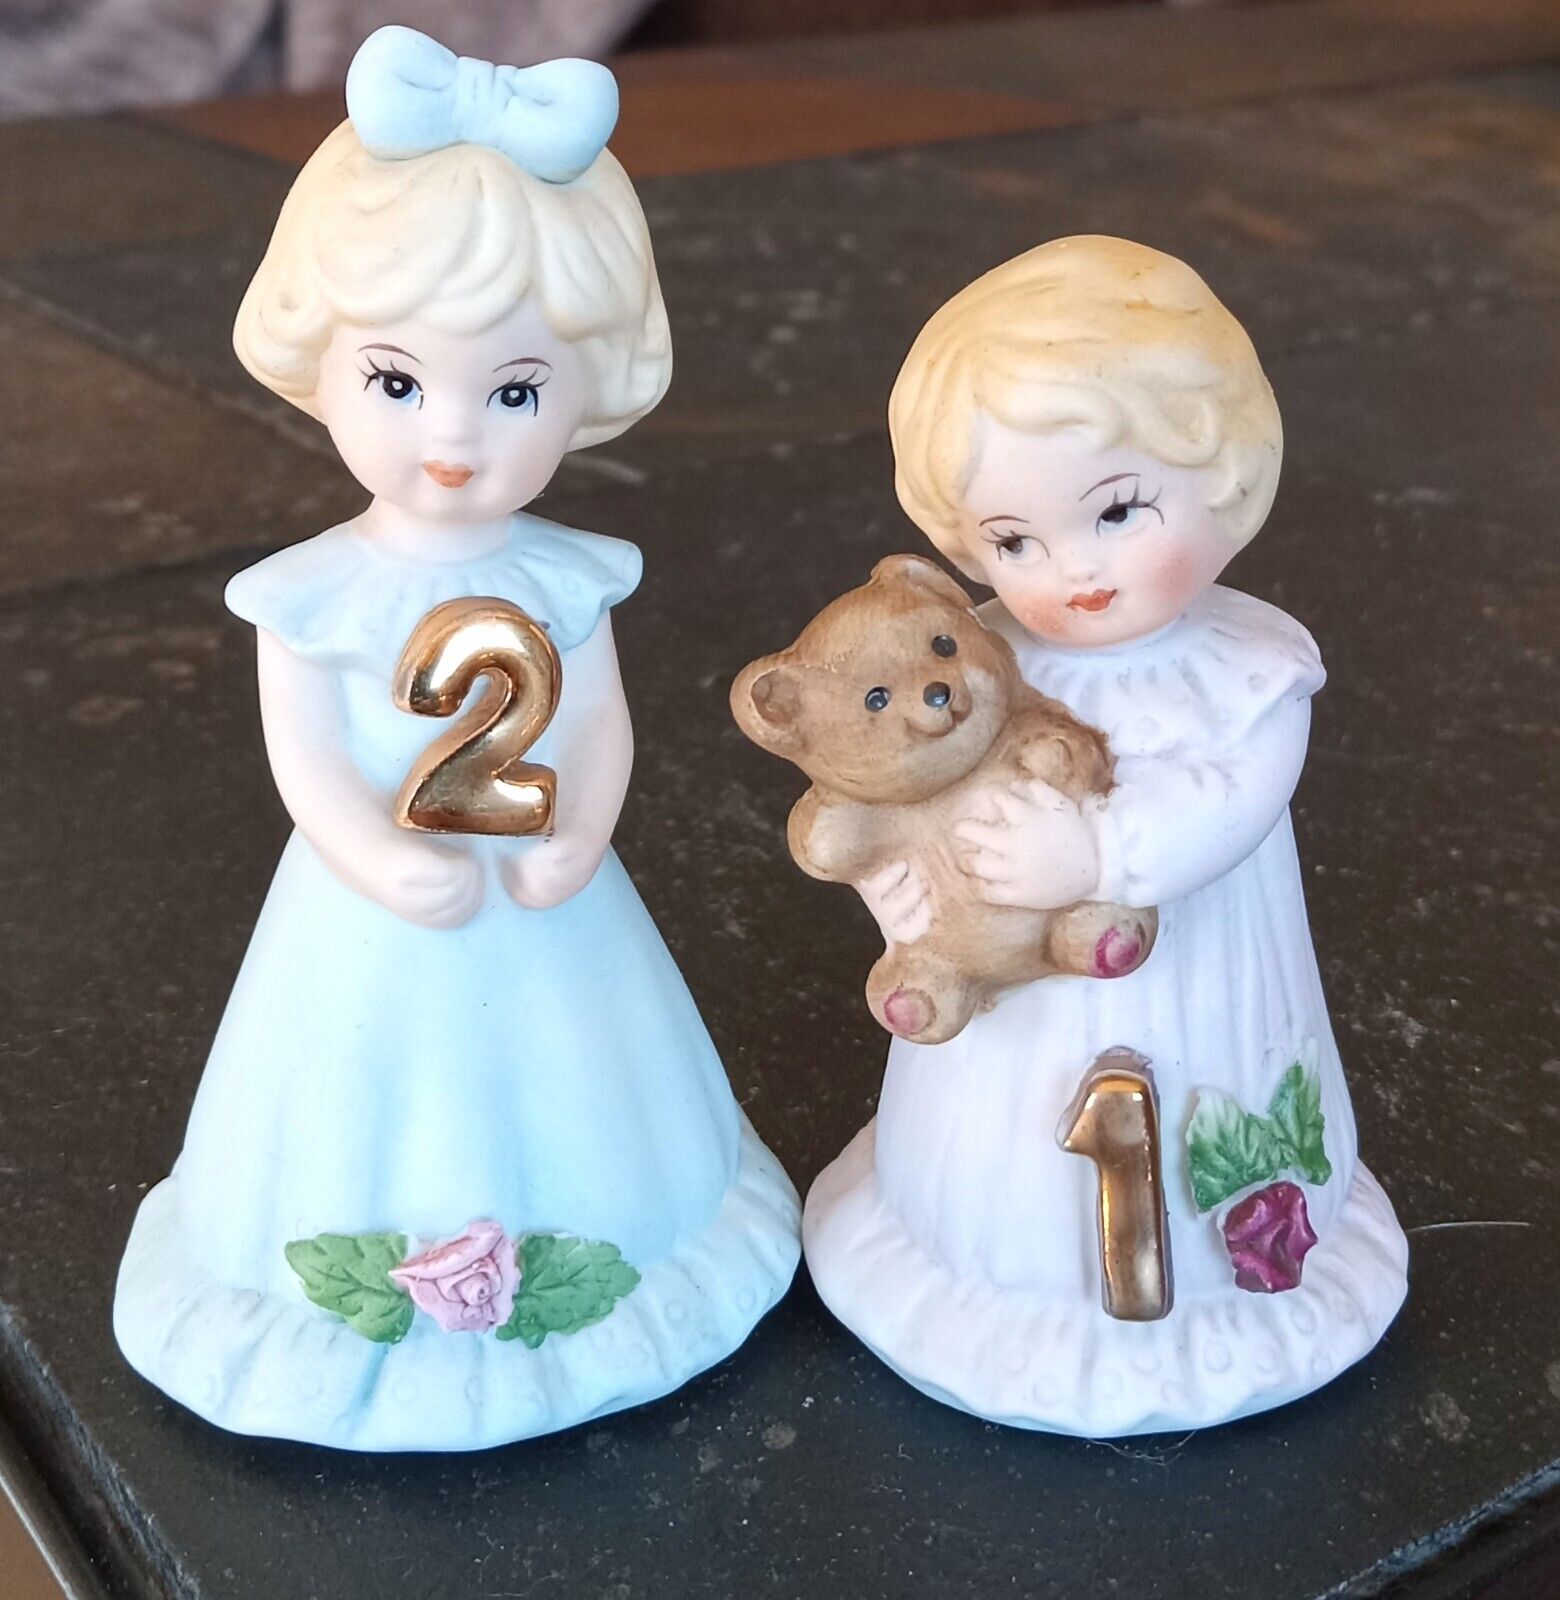 2 Vintage Enesco Growing Up Birthday Girls Blonde Figurines Ages 1 & 2